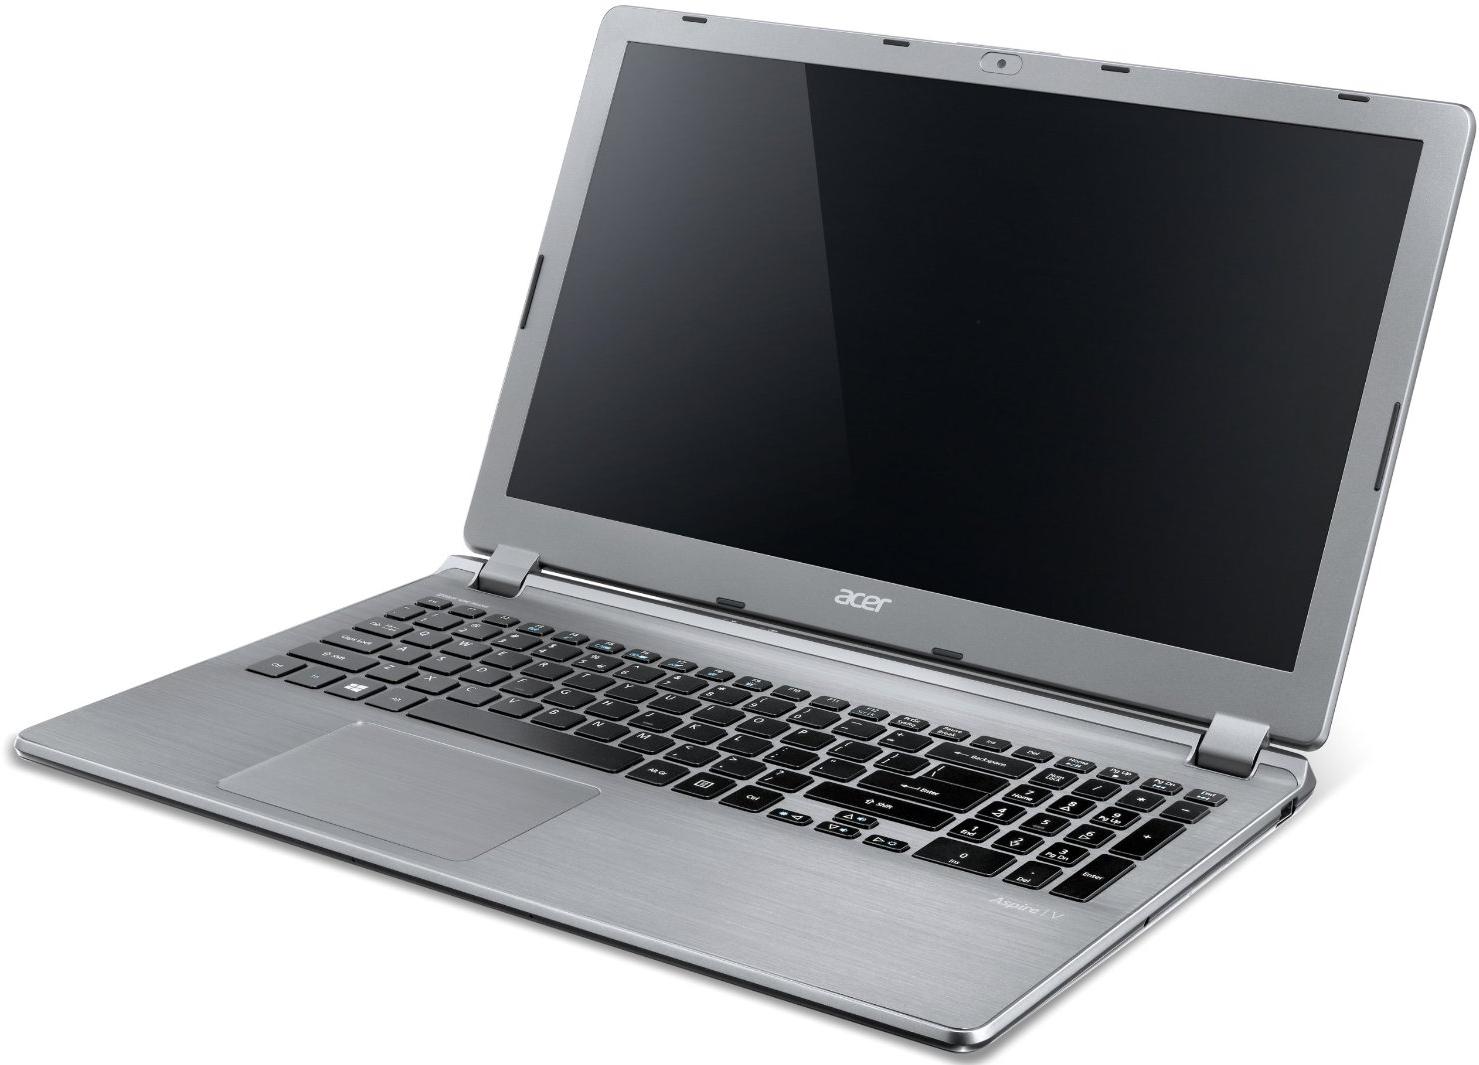   Acer Aspire E5-573G-58ST (NX.MVMER.106)  1